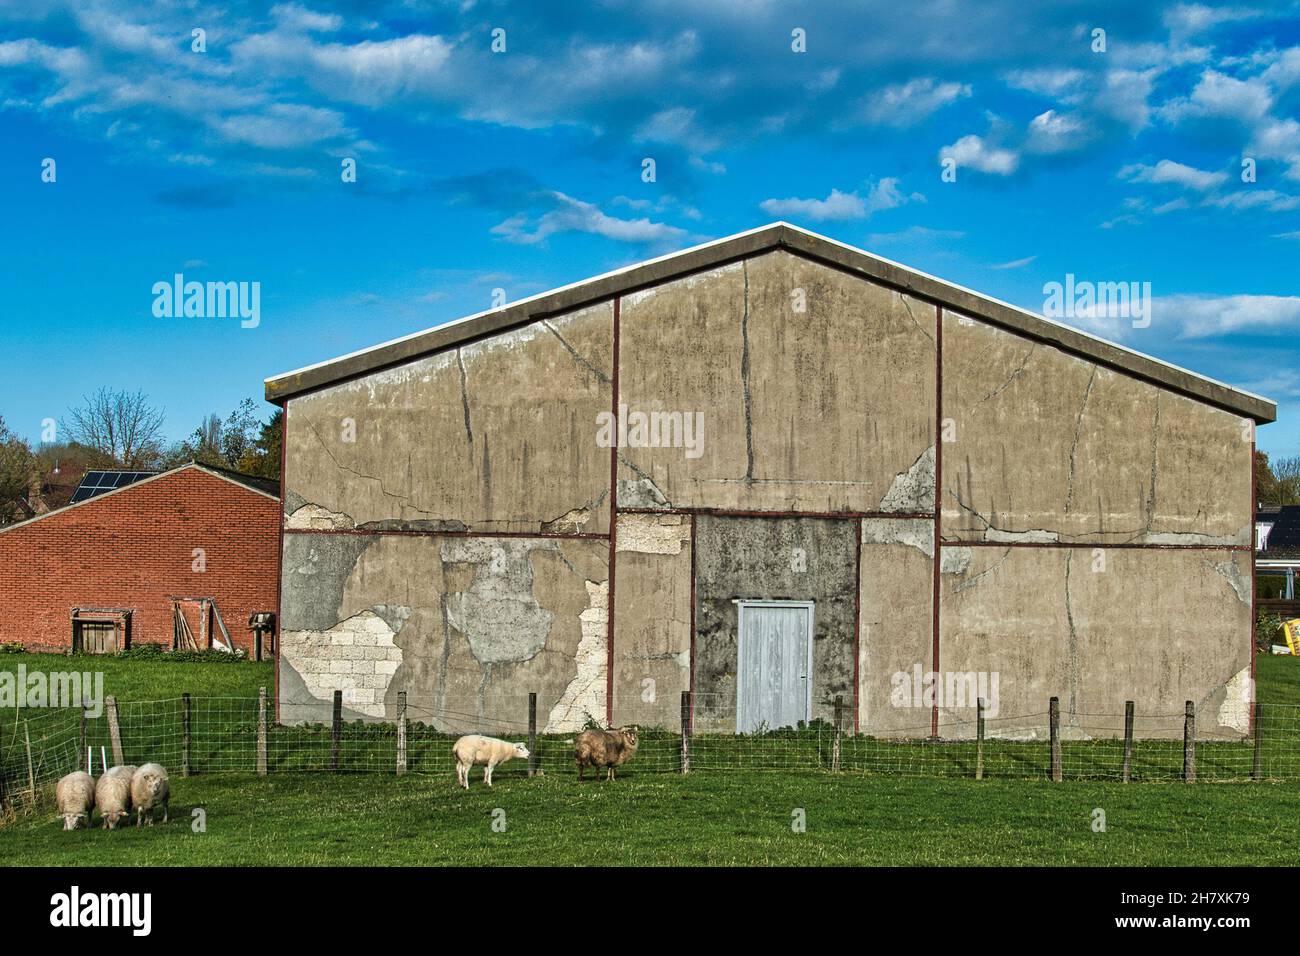 Ancienne grange en pierre négligée avec des murs fissurés, qui s'écaillent.Un couple de moutons au premier plan. Banque D'Images